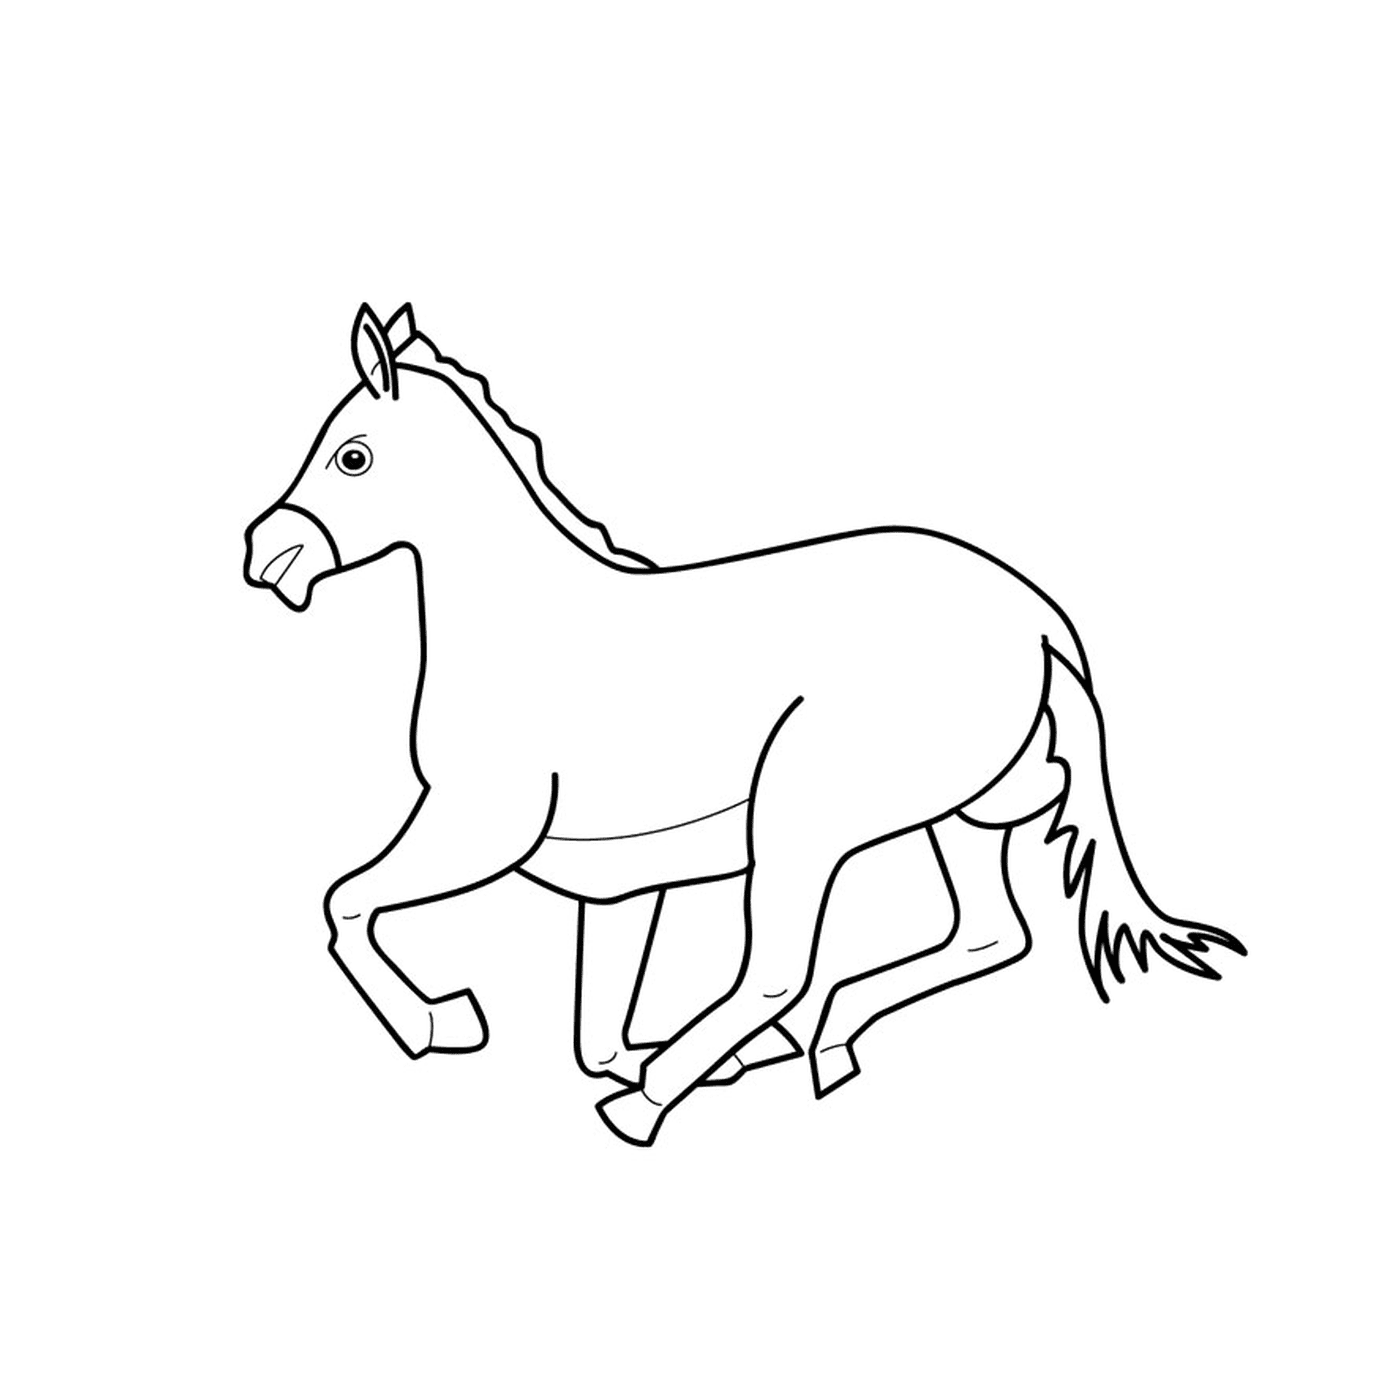  Pferd mit Gallops - Ein Pferd läuft 